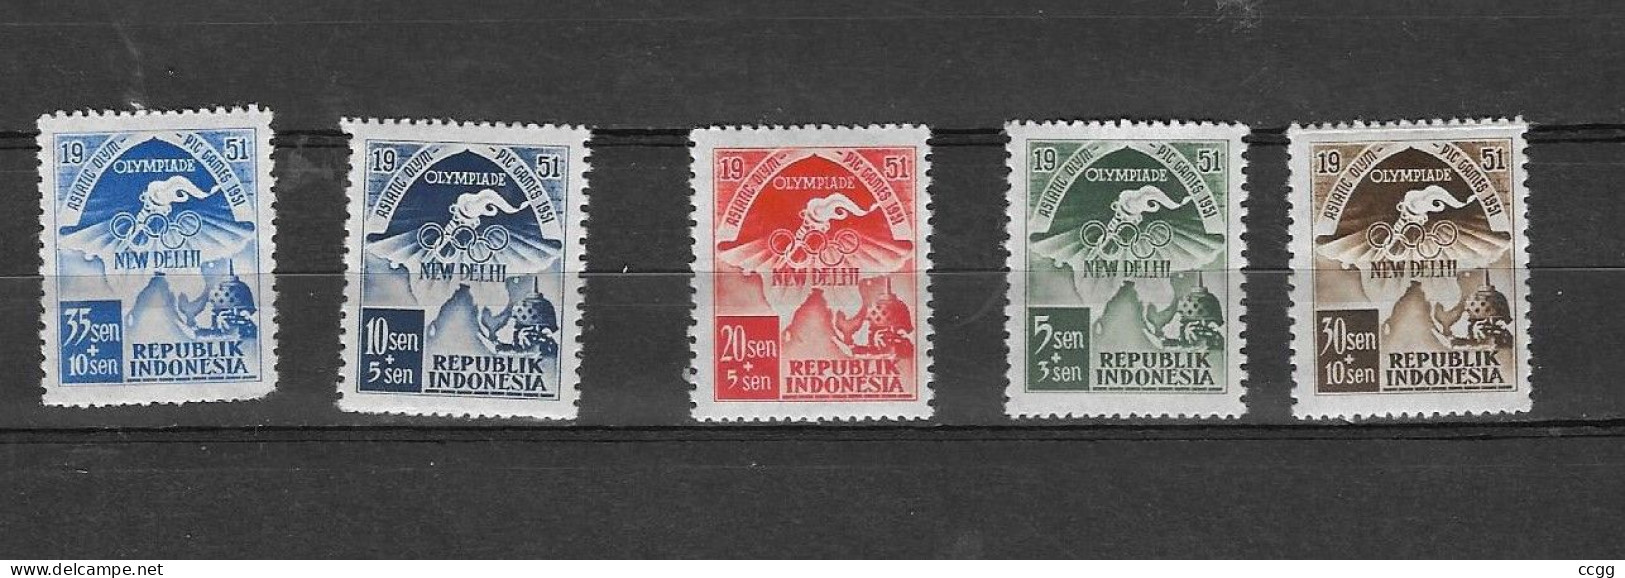 Olympische Spelen  1952 , Indonesie  - Zegels  Postfris - Ete 1952: Helsinki